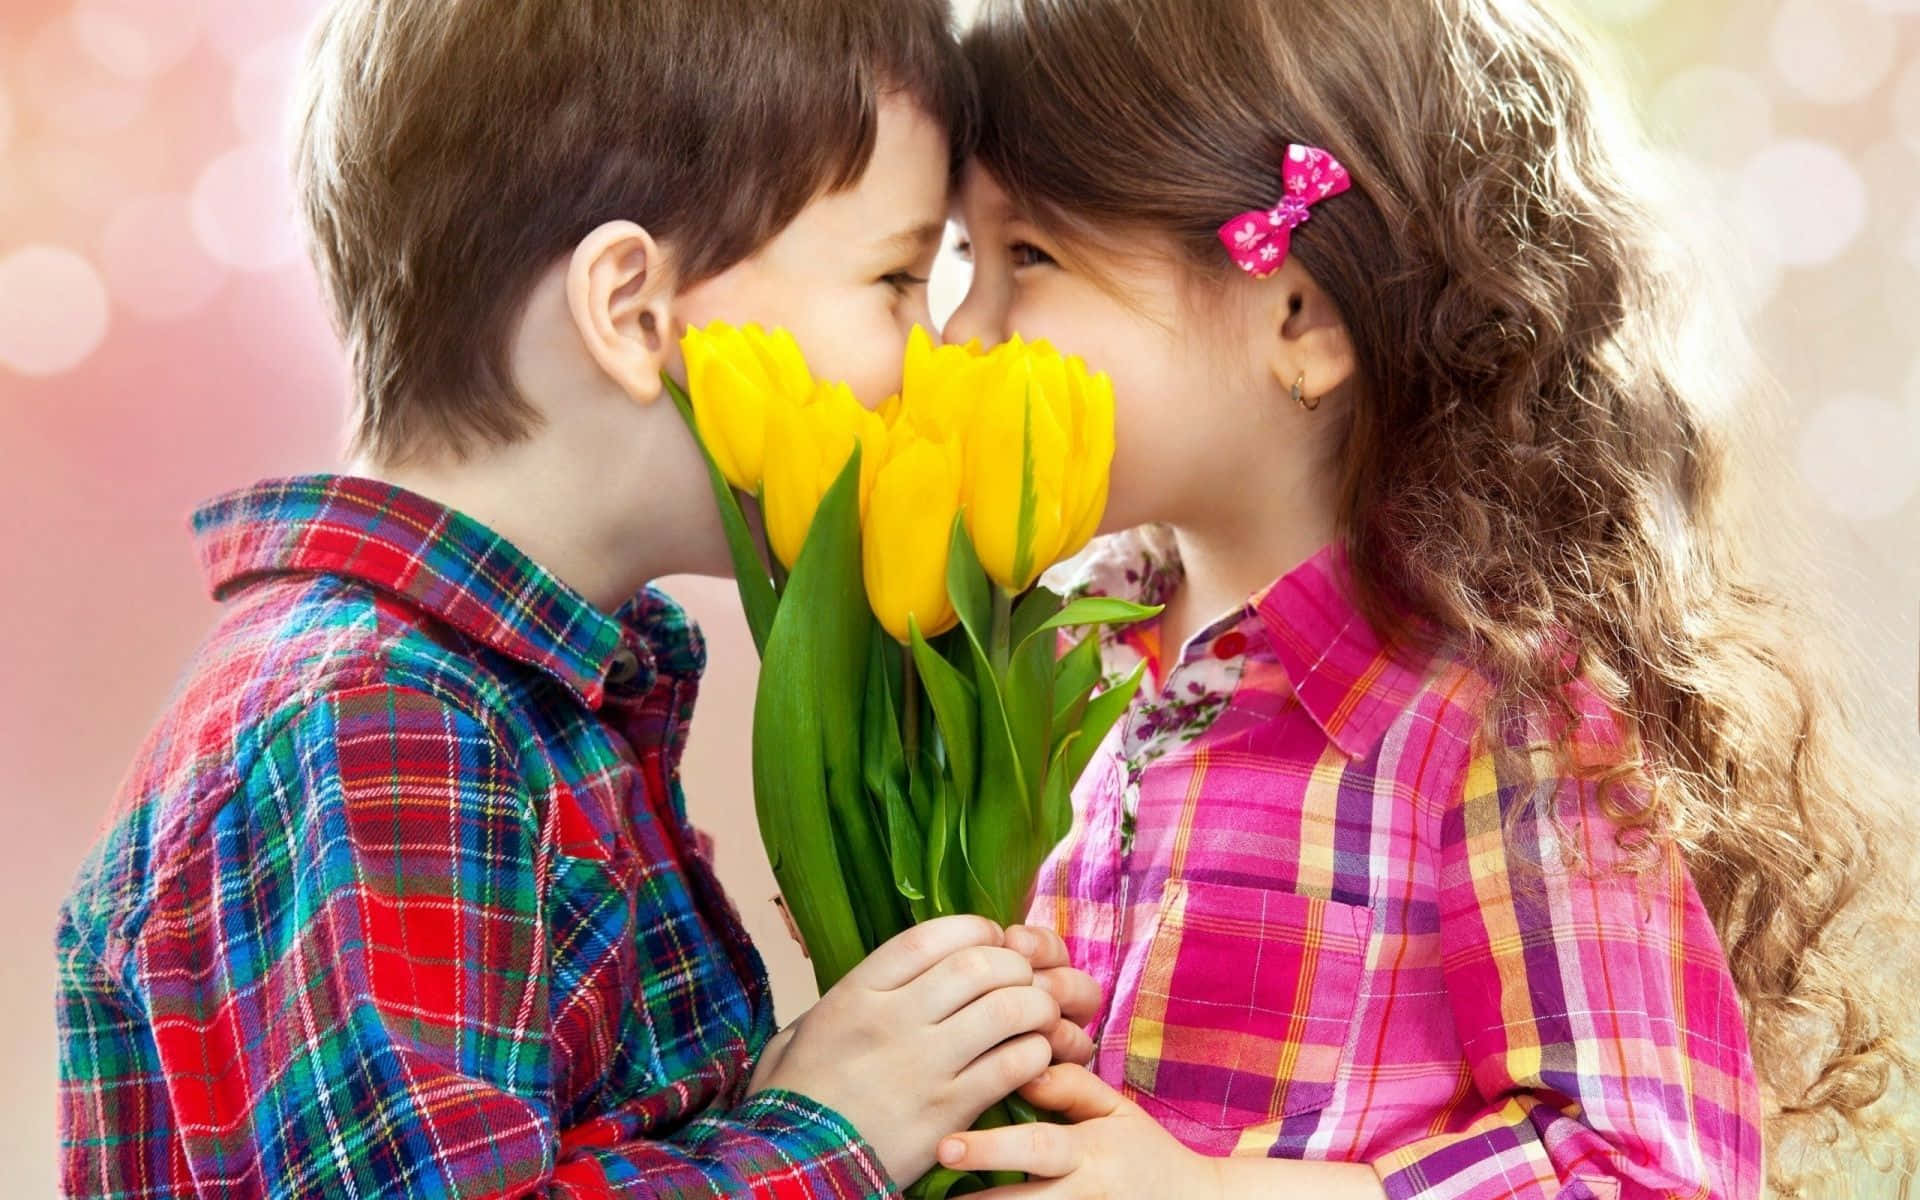 Zweikinder, Die Sich Küssen, Mit Gelben Blumen.